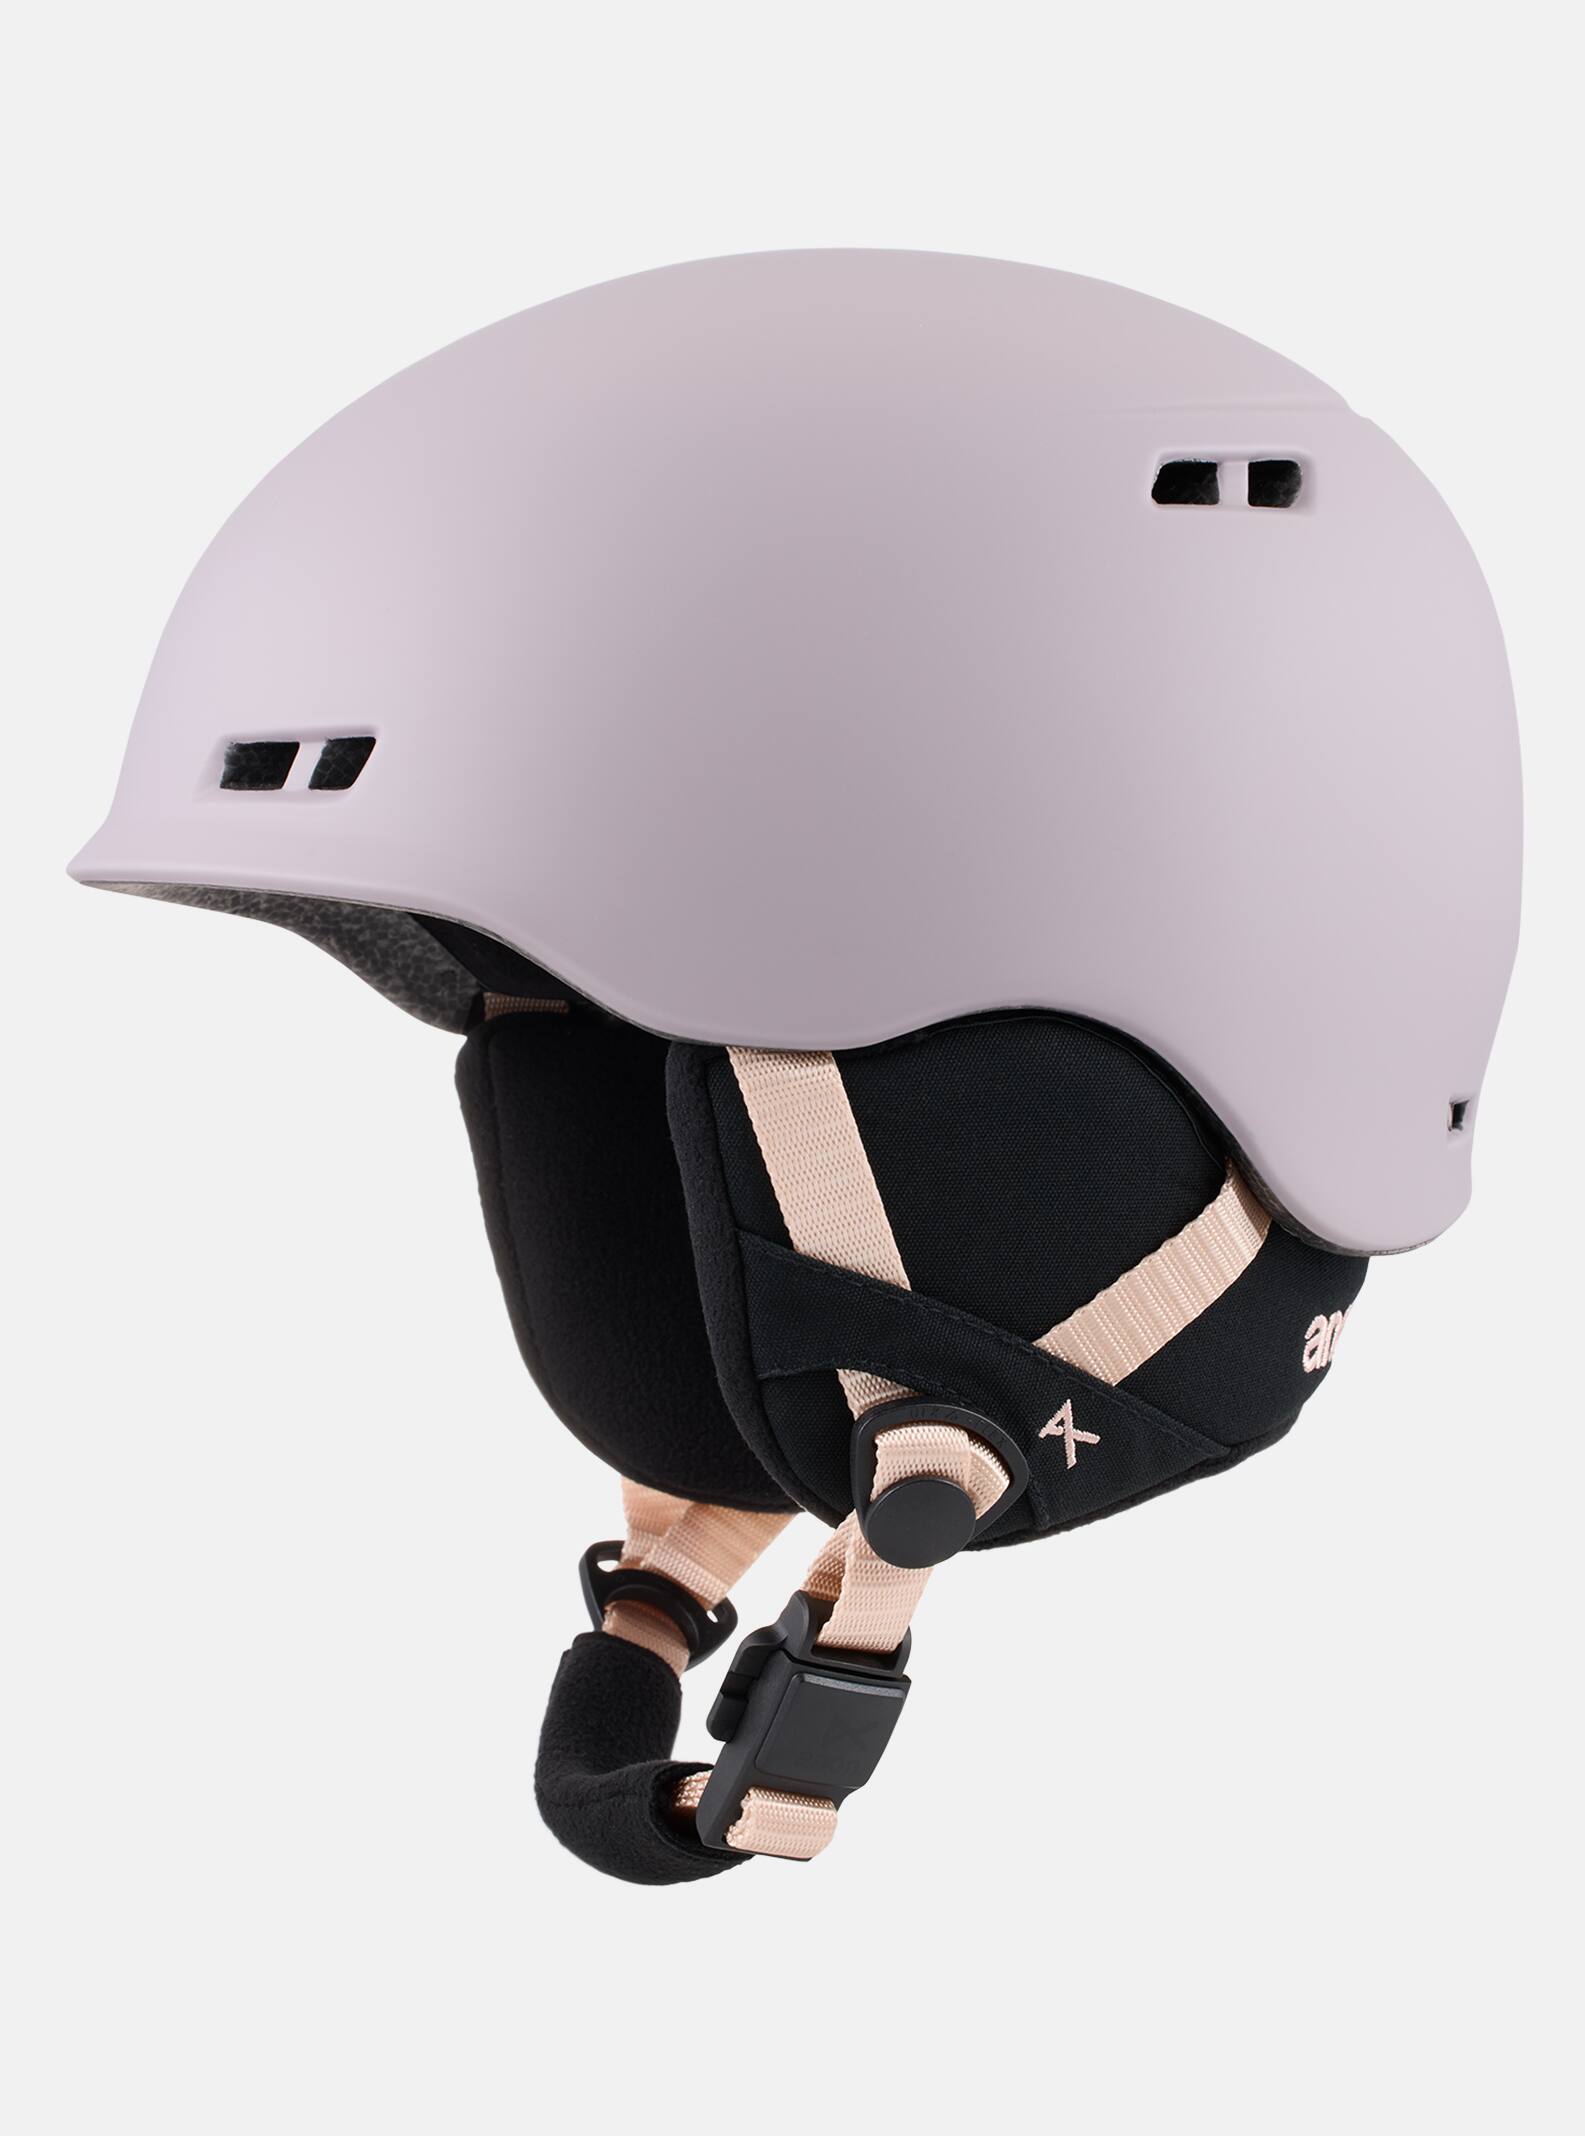 Anon アノン スノーボード ヘルメット 子ども 軽い 新品未使用